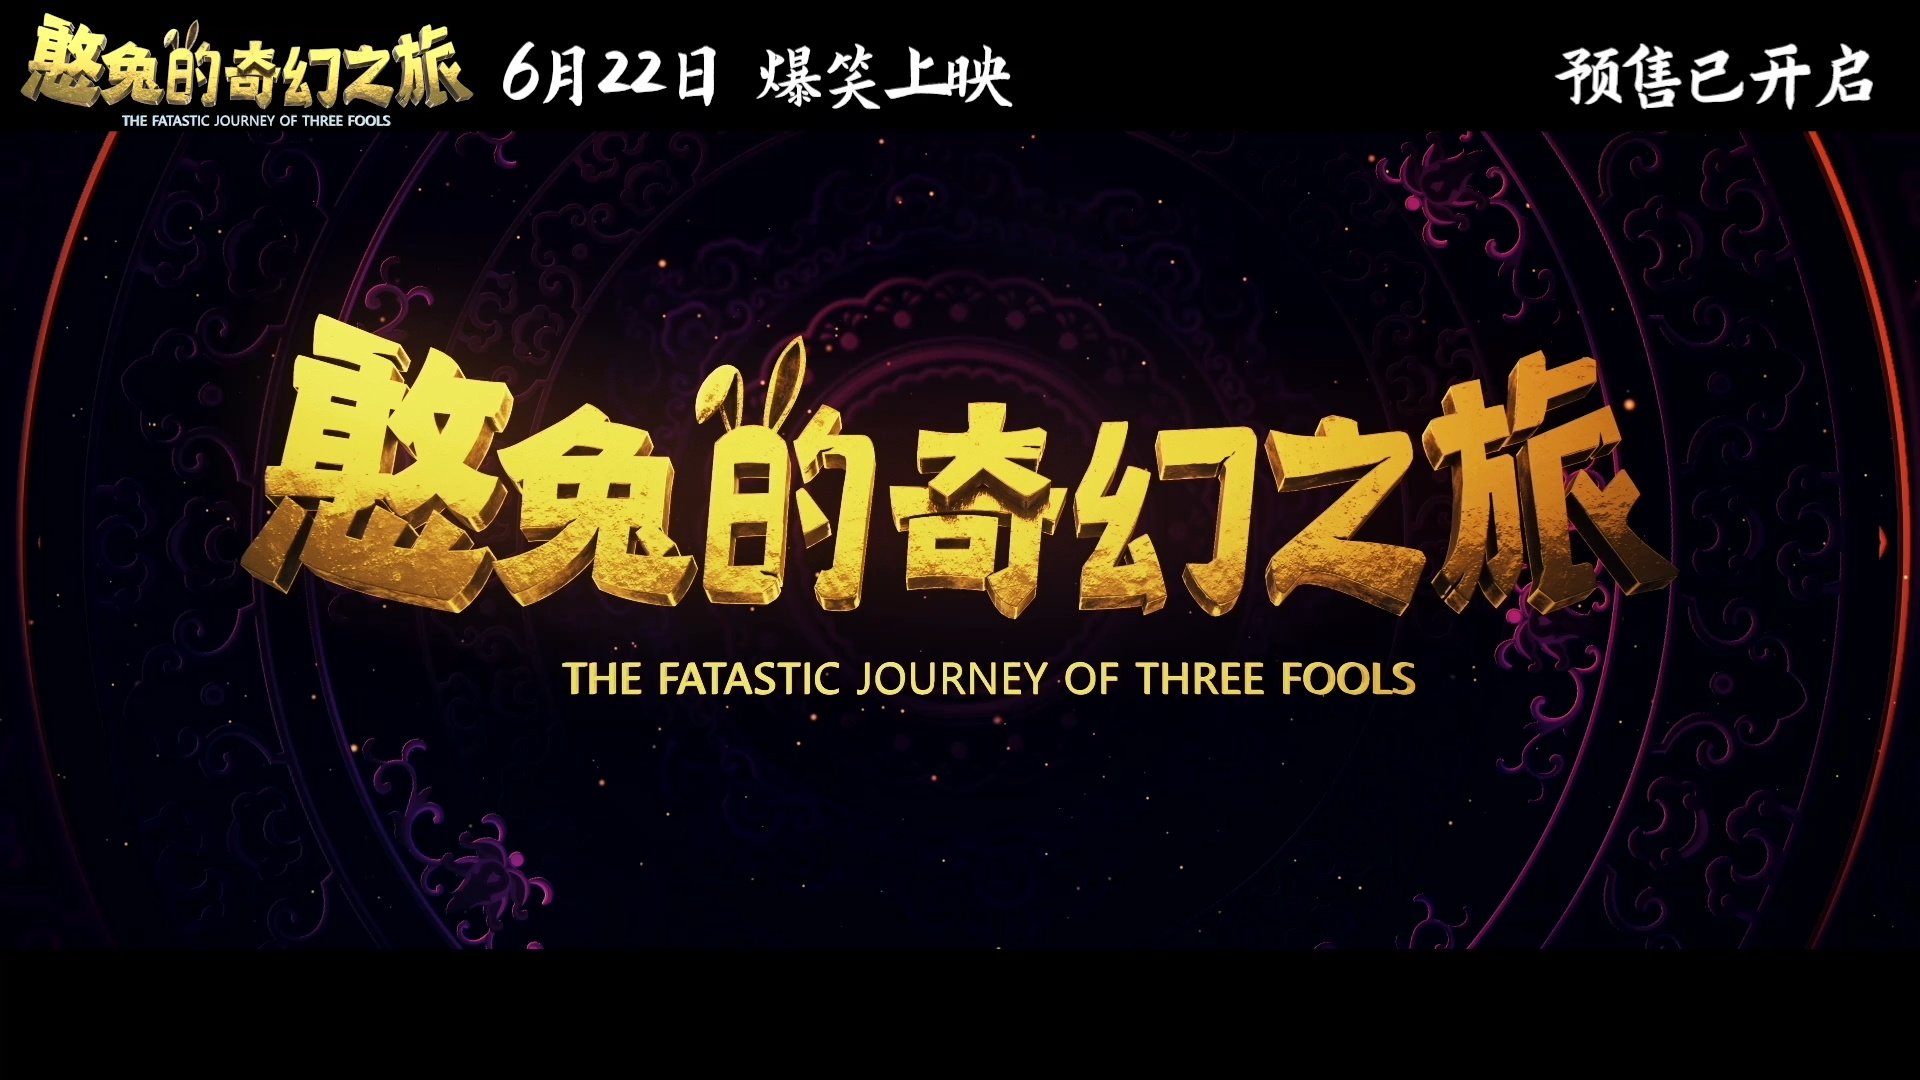 爆笑奇幻动画《憨兔的奇幻之旅》6月22日端午节上映